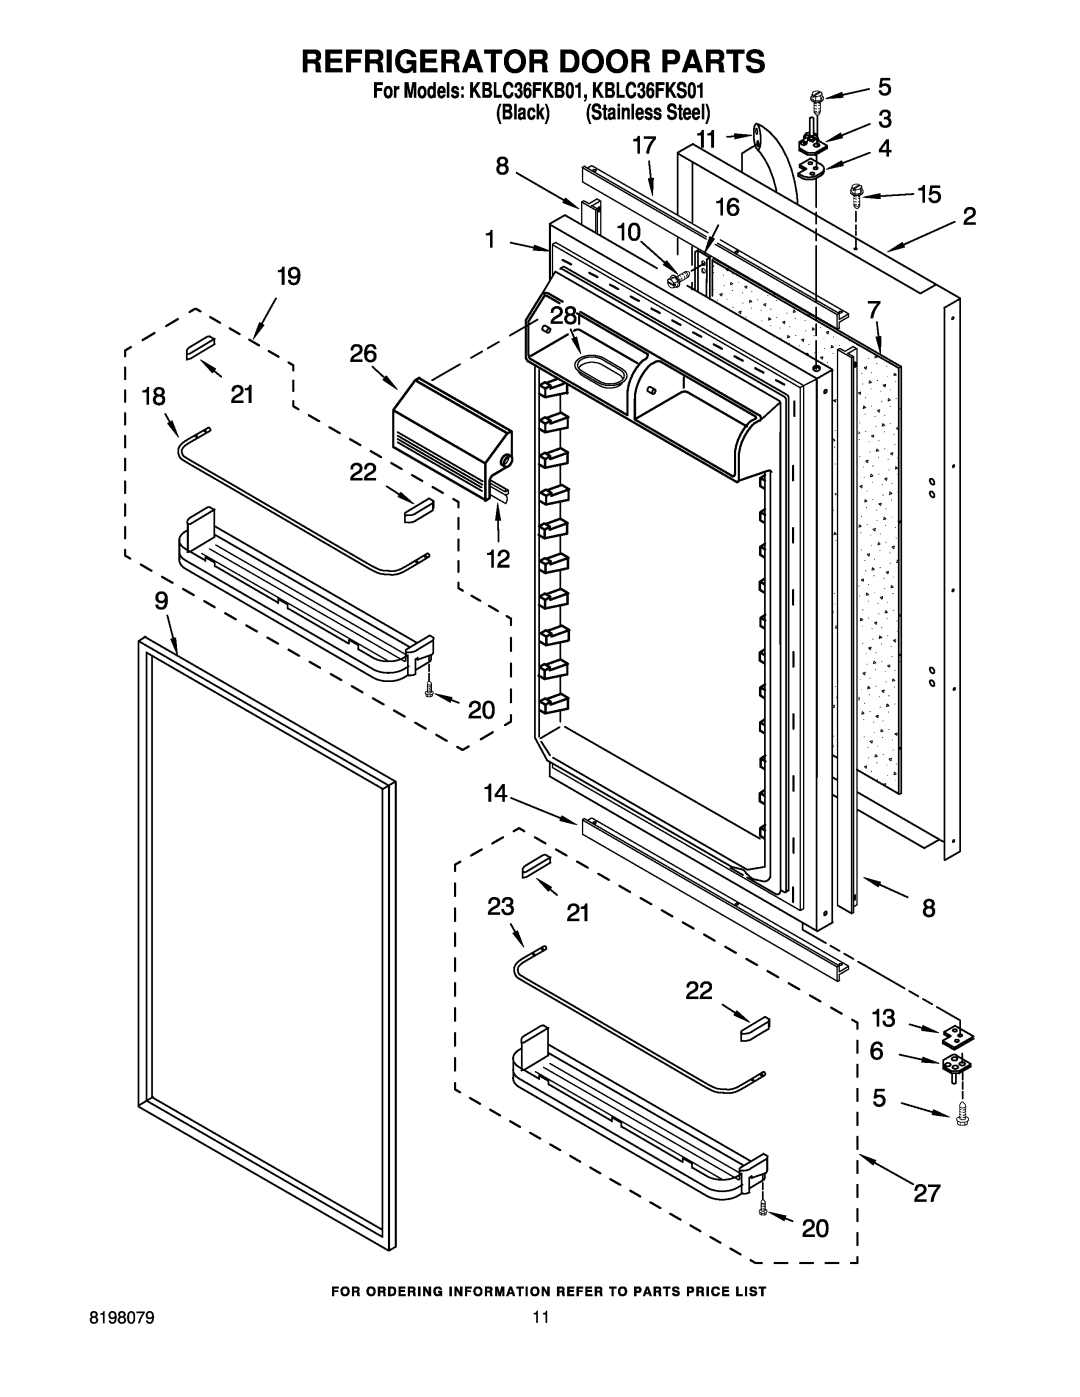 KitchenAid manual Refrigerator Door Parts, For Models KBLC36FKB01, KBLC36FKS01, Black, Stainless Steel 